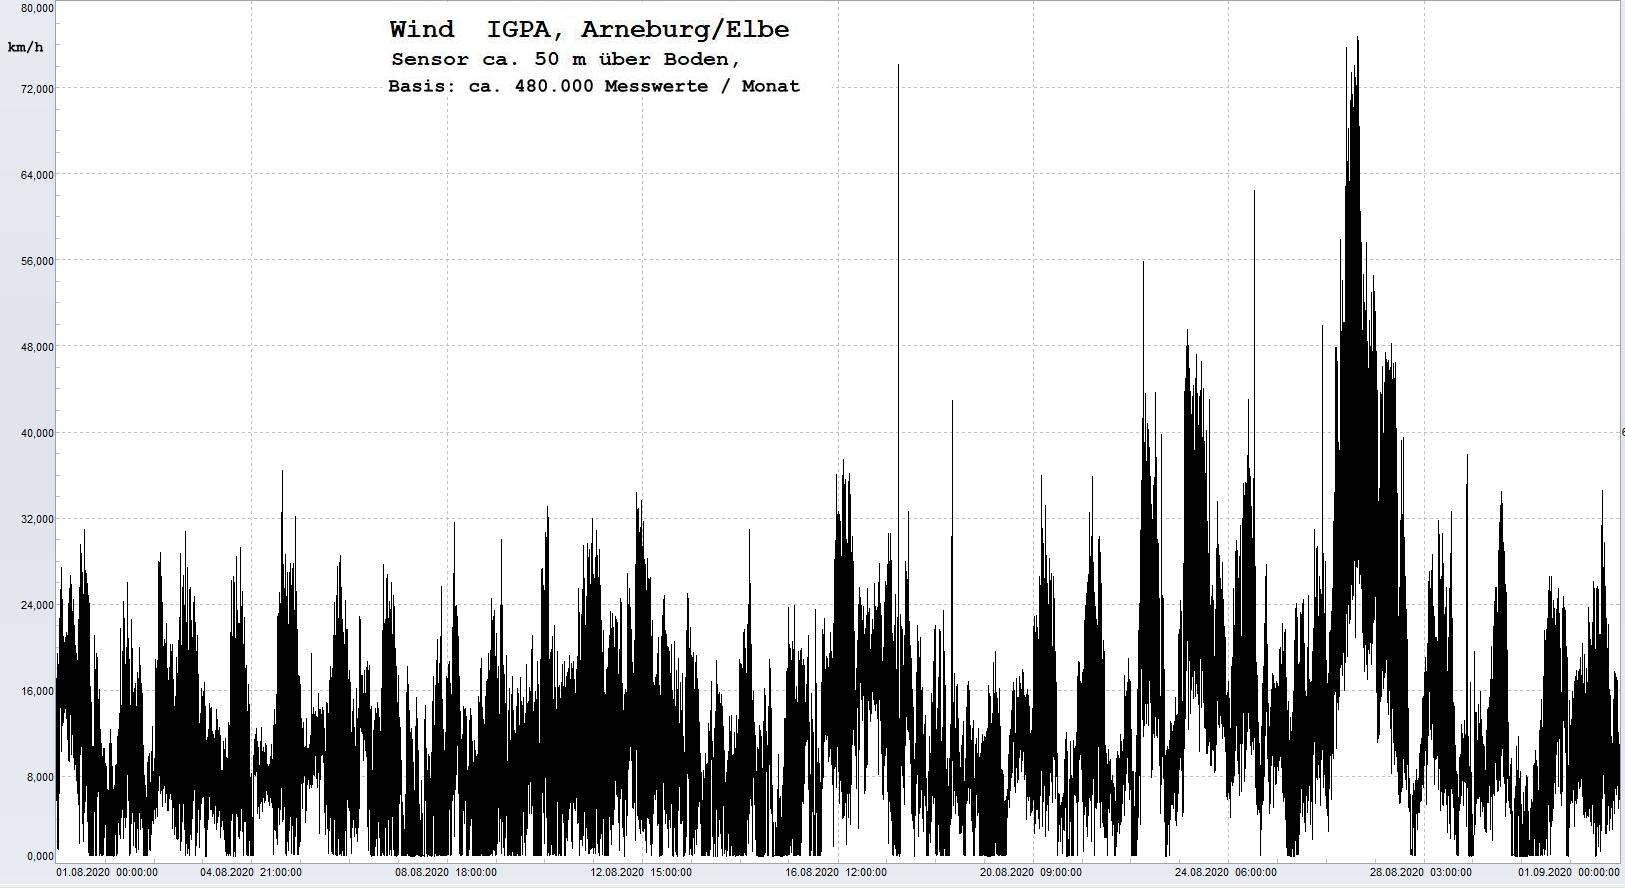 Arneburg Histogramm Winddaten Monat August 2020, 
  Sensor auf Gebude, ca. 50 m ber Erdboden, Basis: 5s-Aufzeichnung